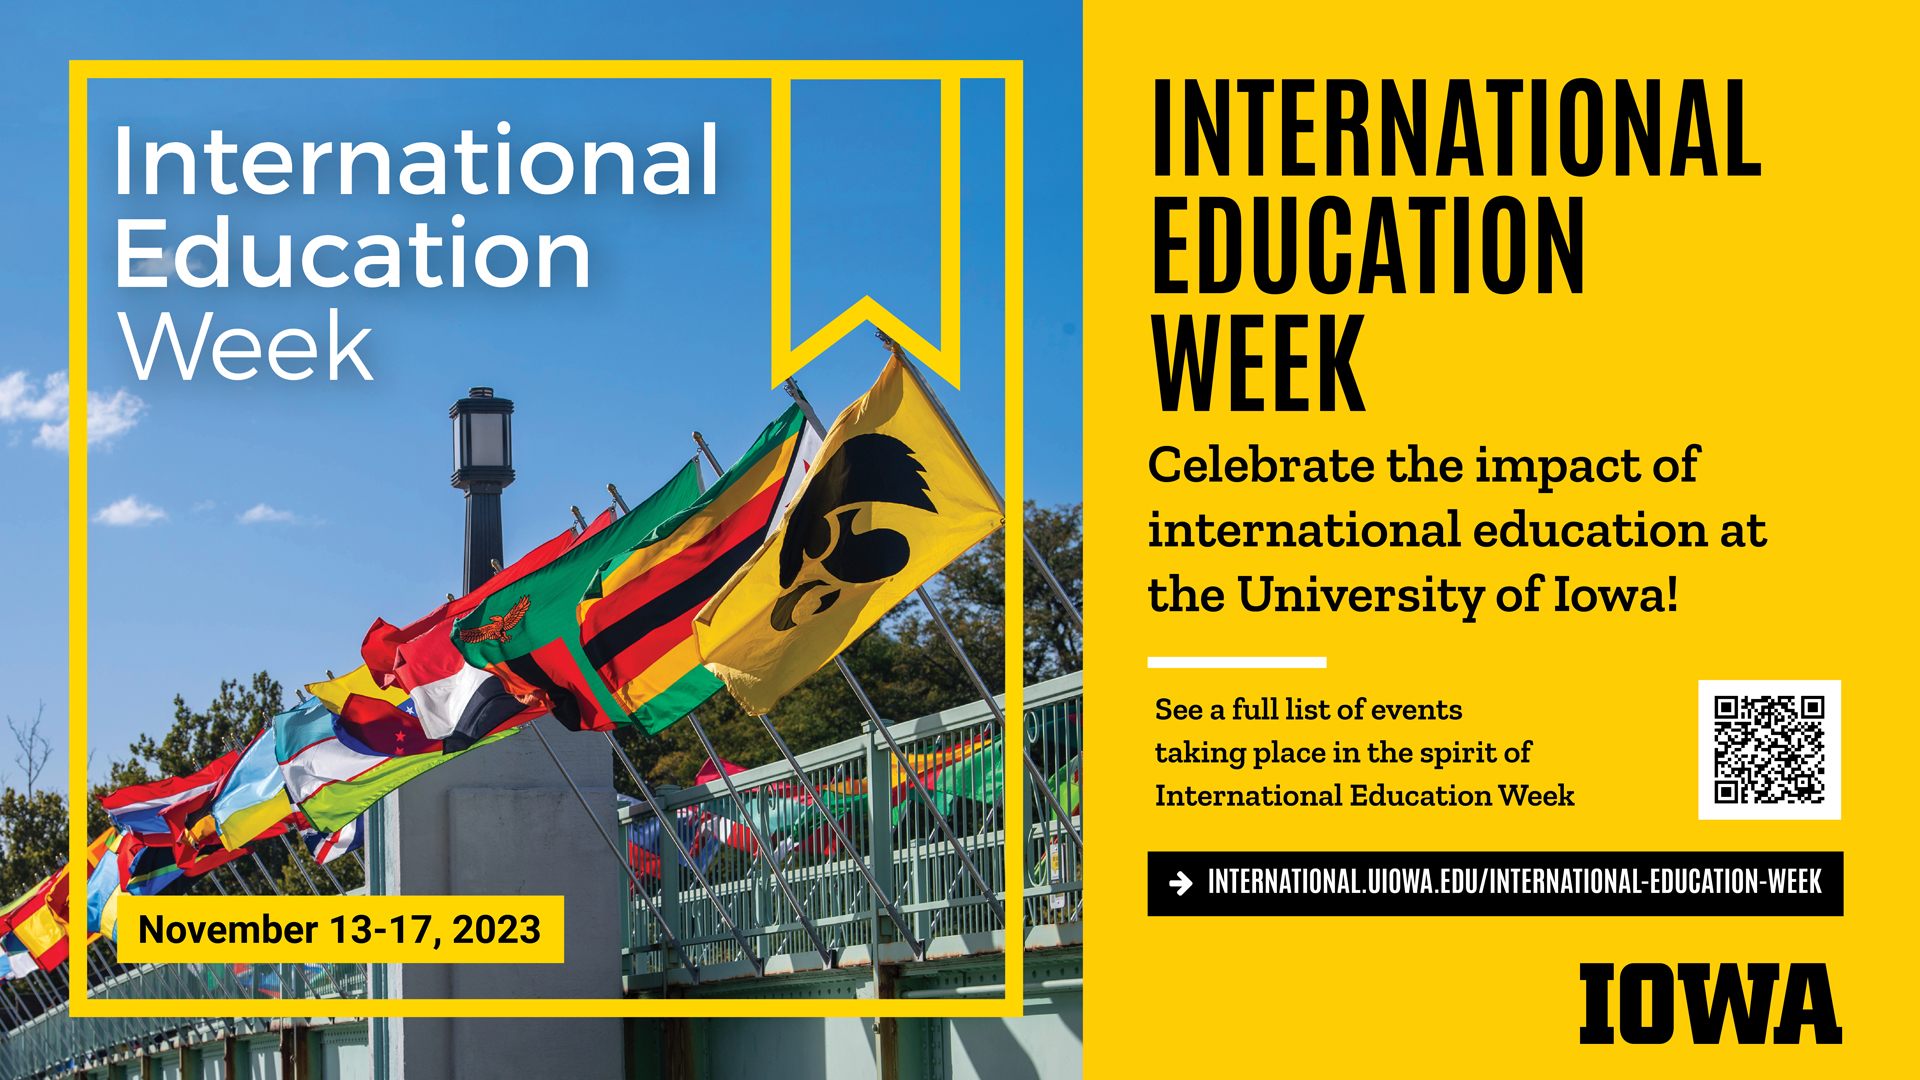 international education week